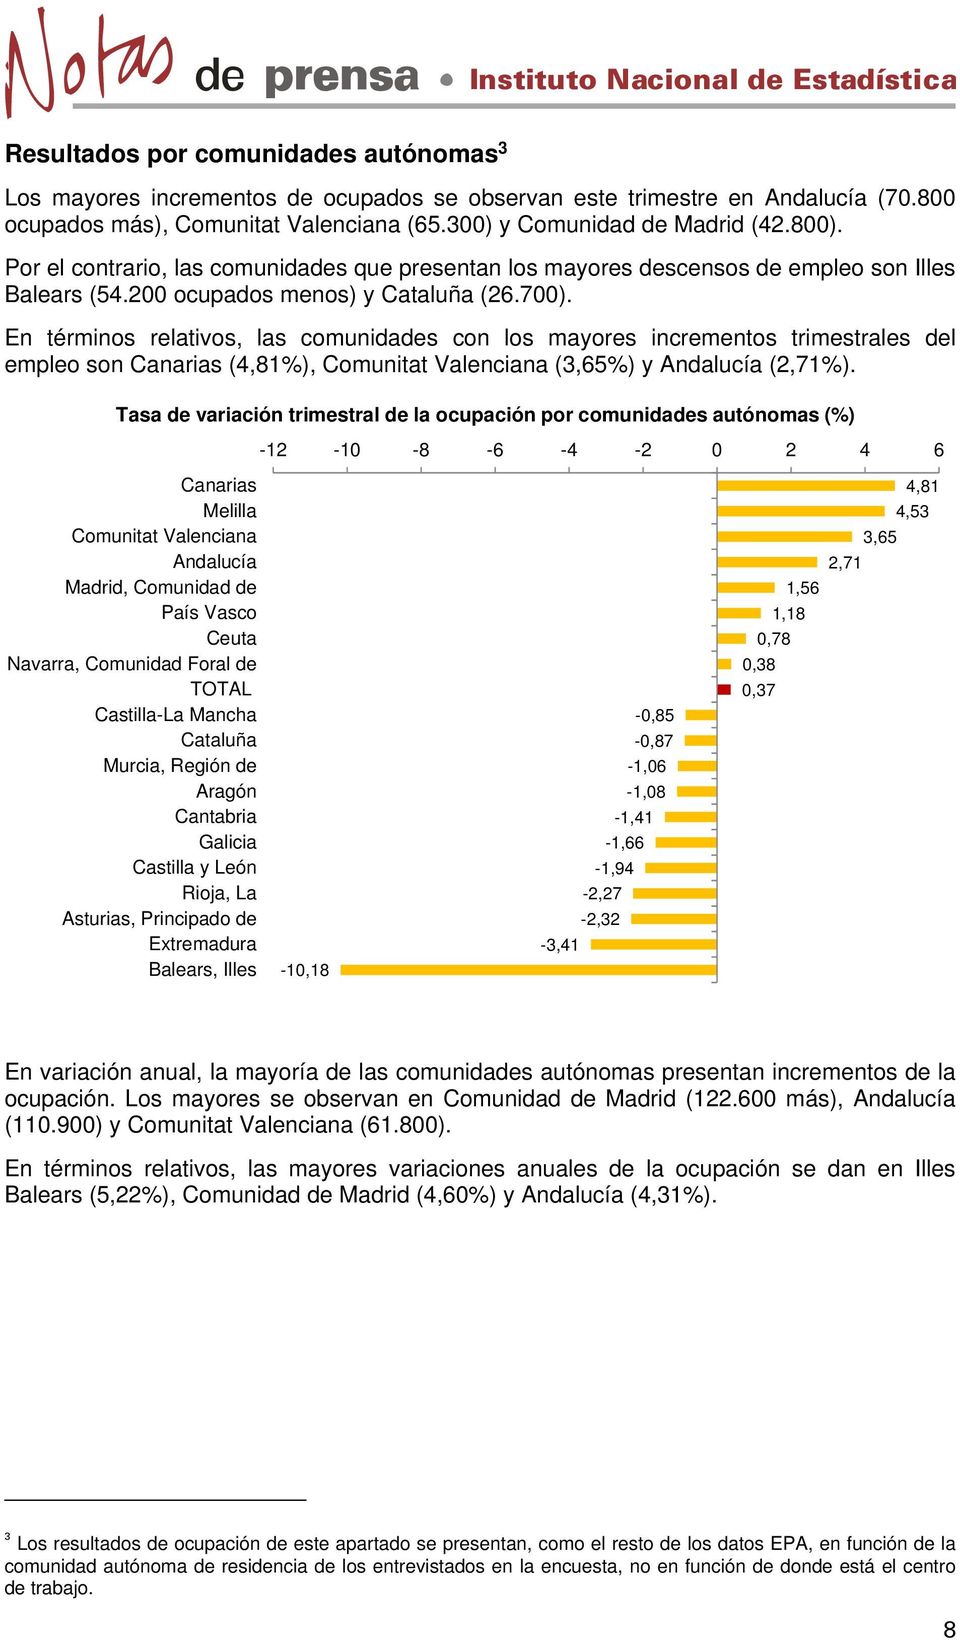 En términos relativos, las comunidades con los mayores incrementos trimestrales del empleo son Canarias (4,81%), Comunitat Valenciana (3,65%) y Andalucía (2,71%).